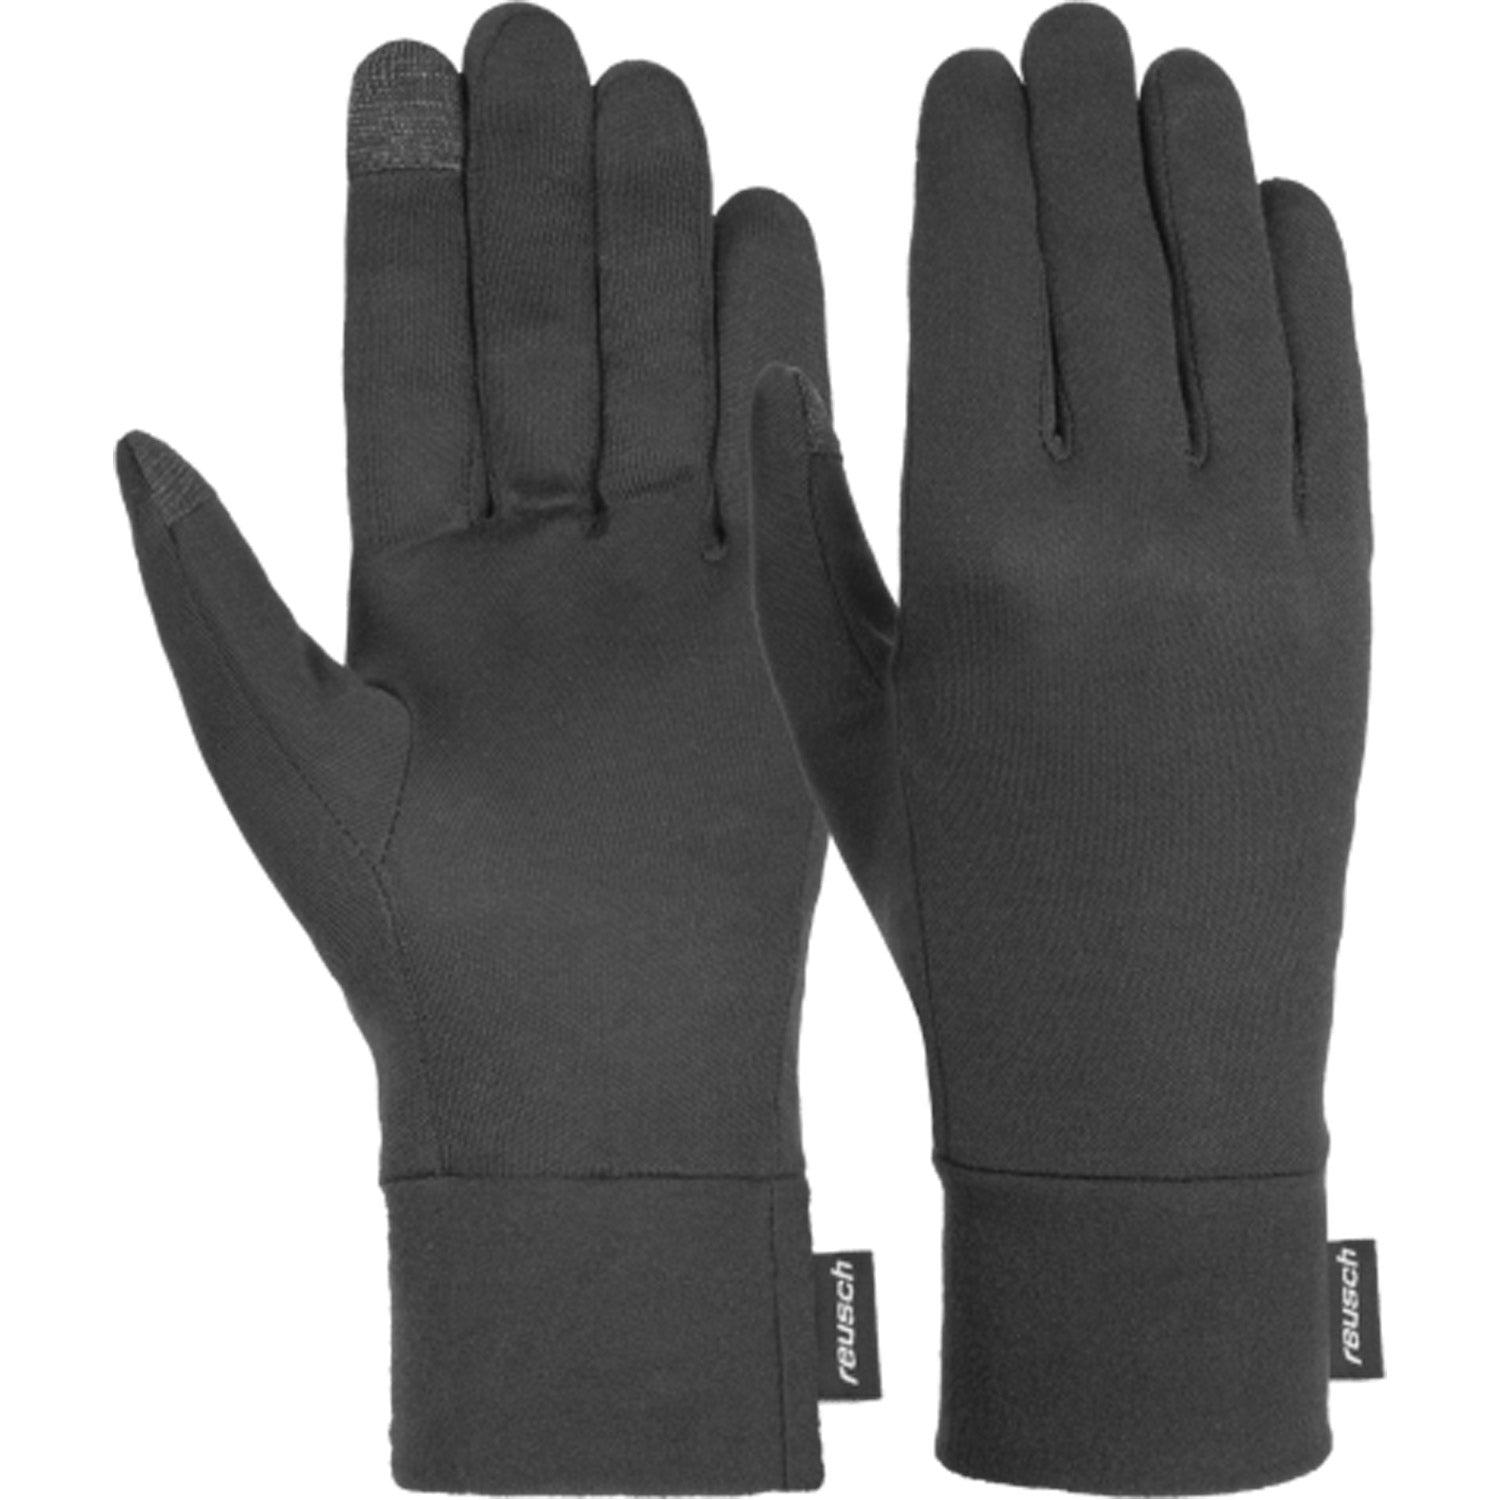 Silk Touchtec Glove Liner